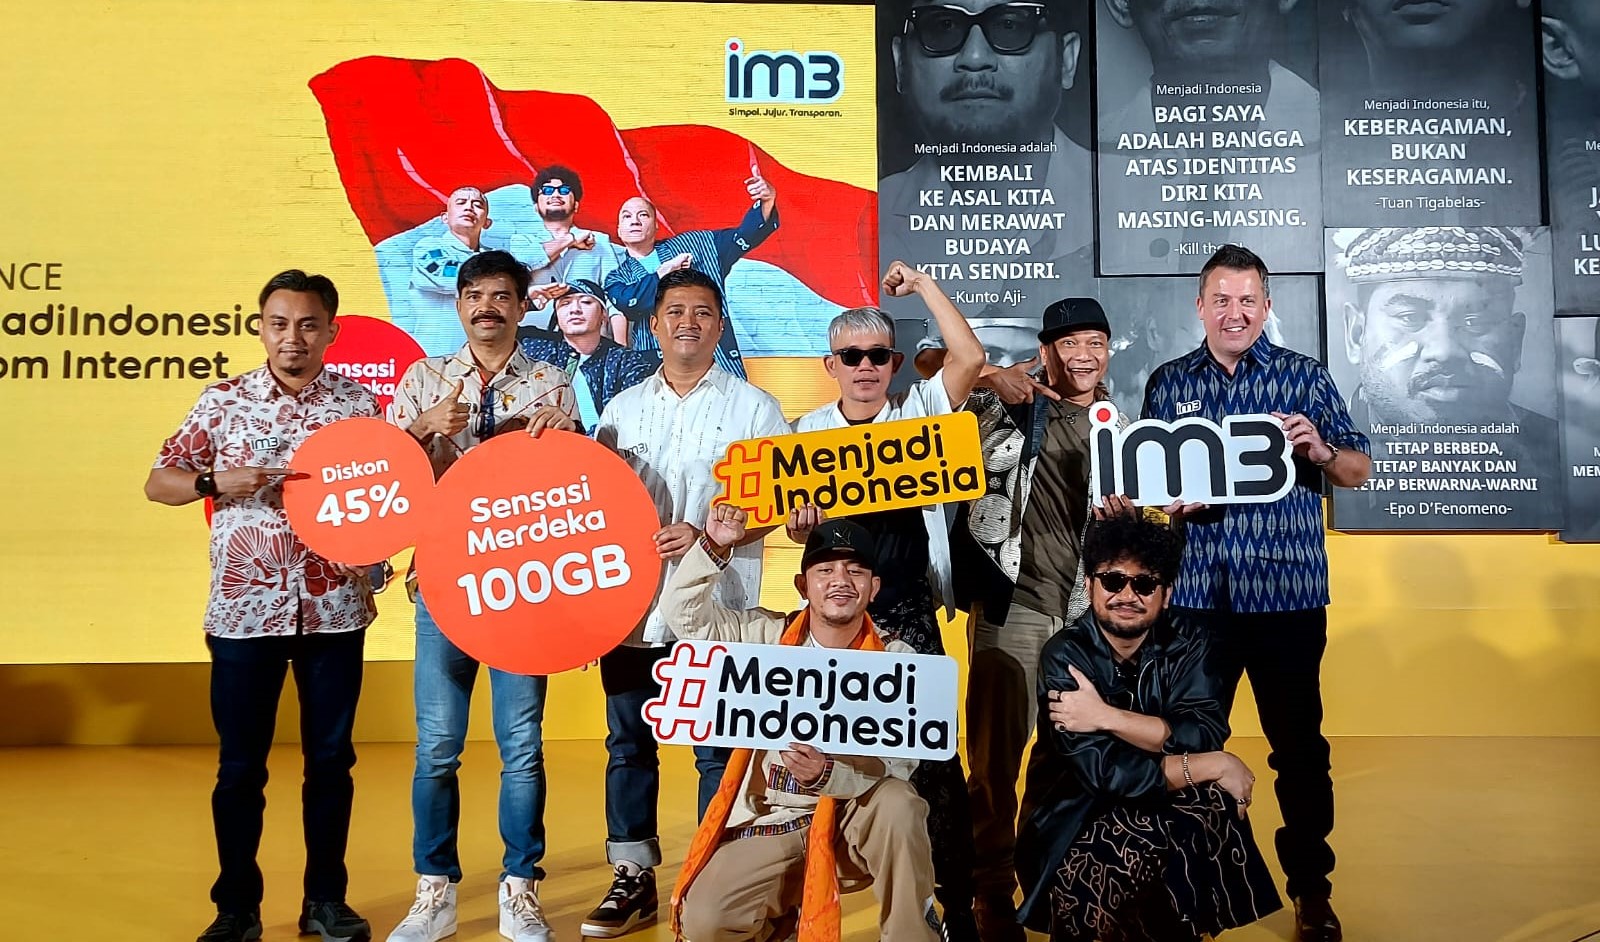 Im3 Menjadi Indonesia Sensasi Merdeka